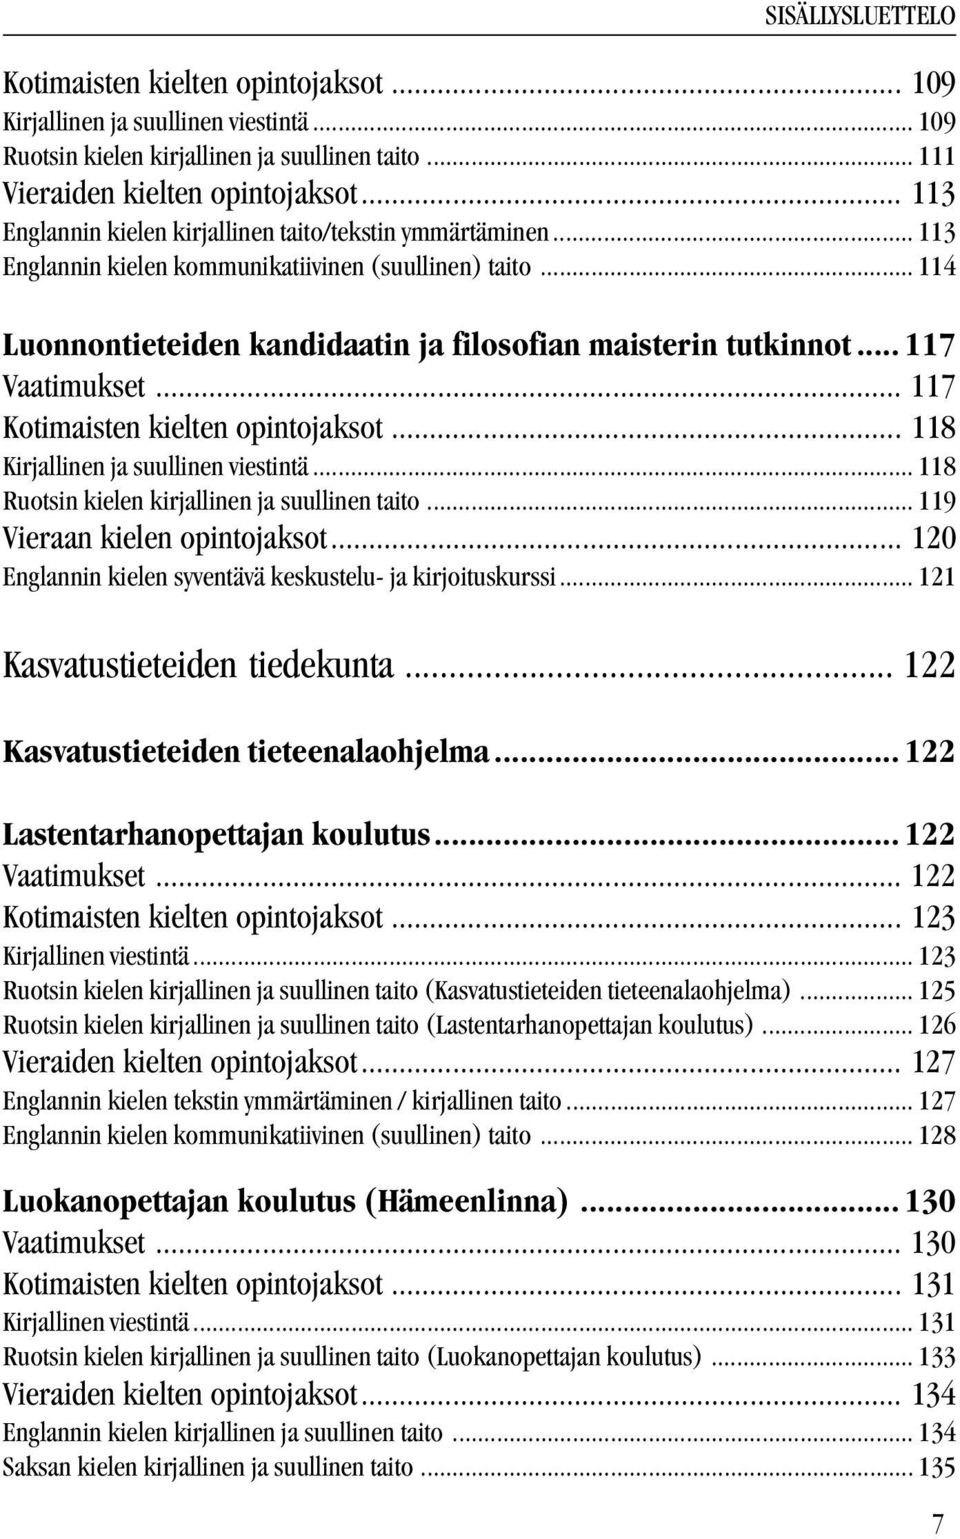 .. 117 Vaatimukset... 117 Kotimaisten kielten opintojaksot... 118 Kirjallinen ja suullinen viestintä... 118 Ruotsin kielen kirjallinen ja suullinen taito... 119 Vieraan kielen opintojaksot.